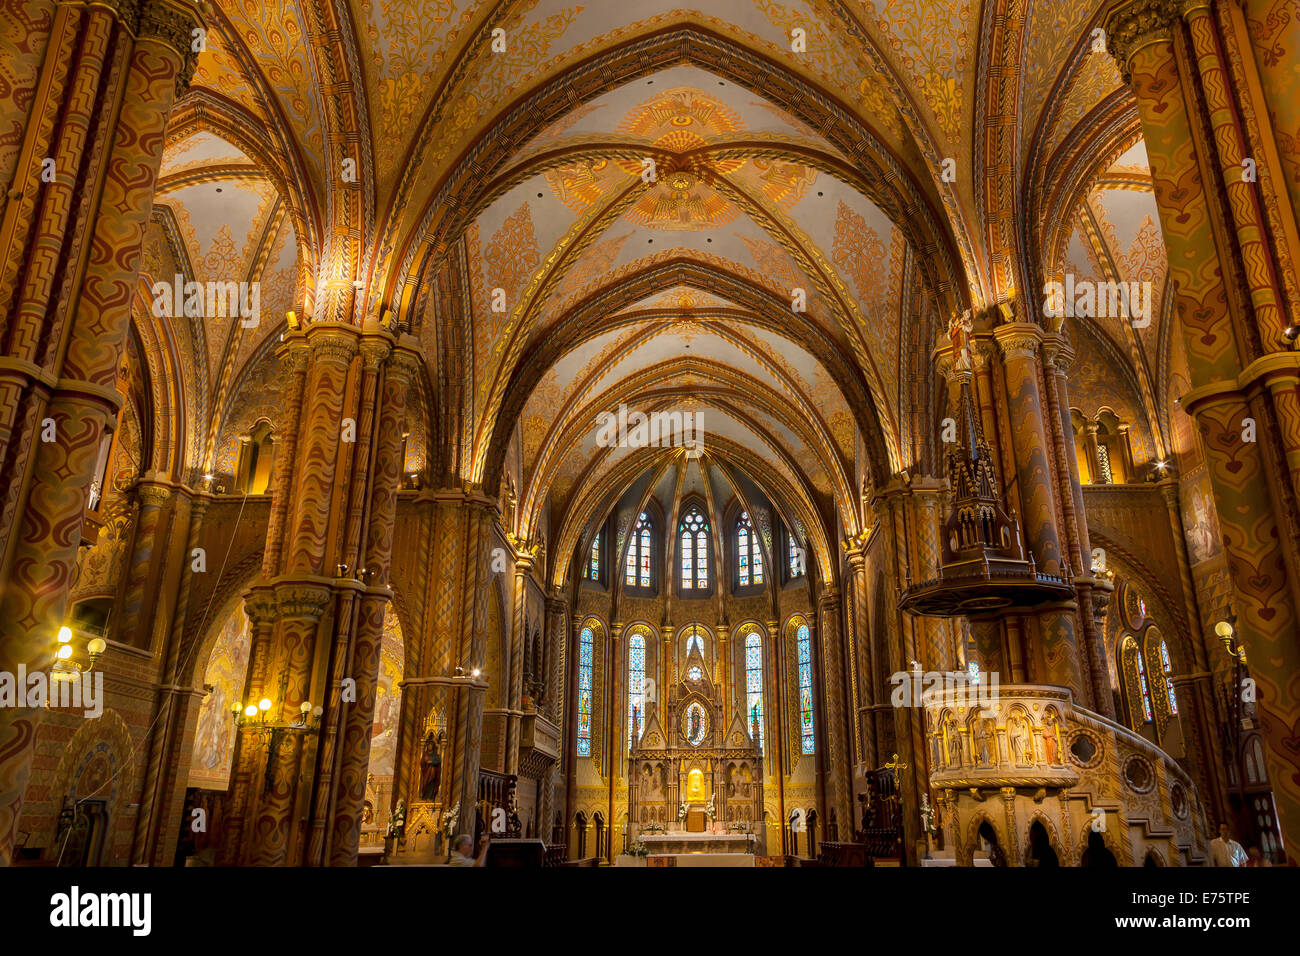 Interior of Matthias Church, Budapest, Hungary Stock Photo